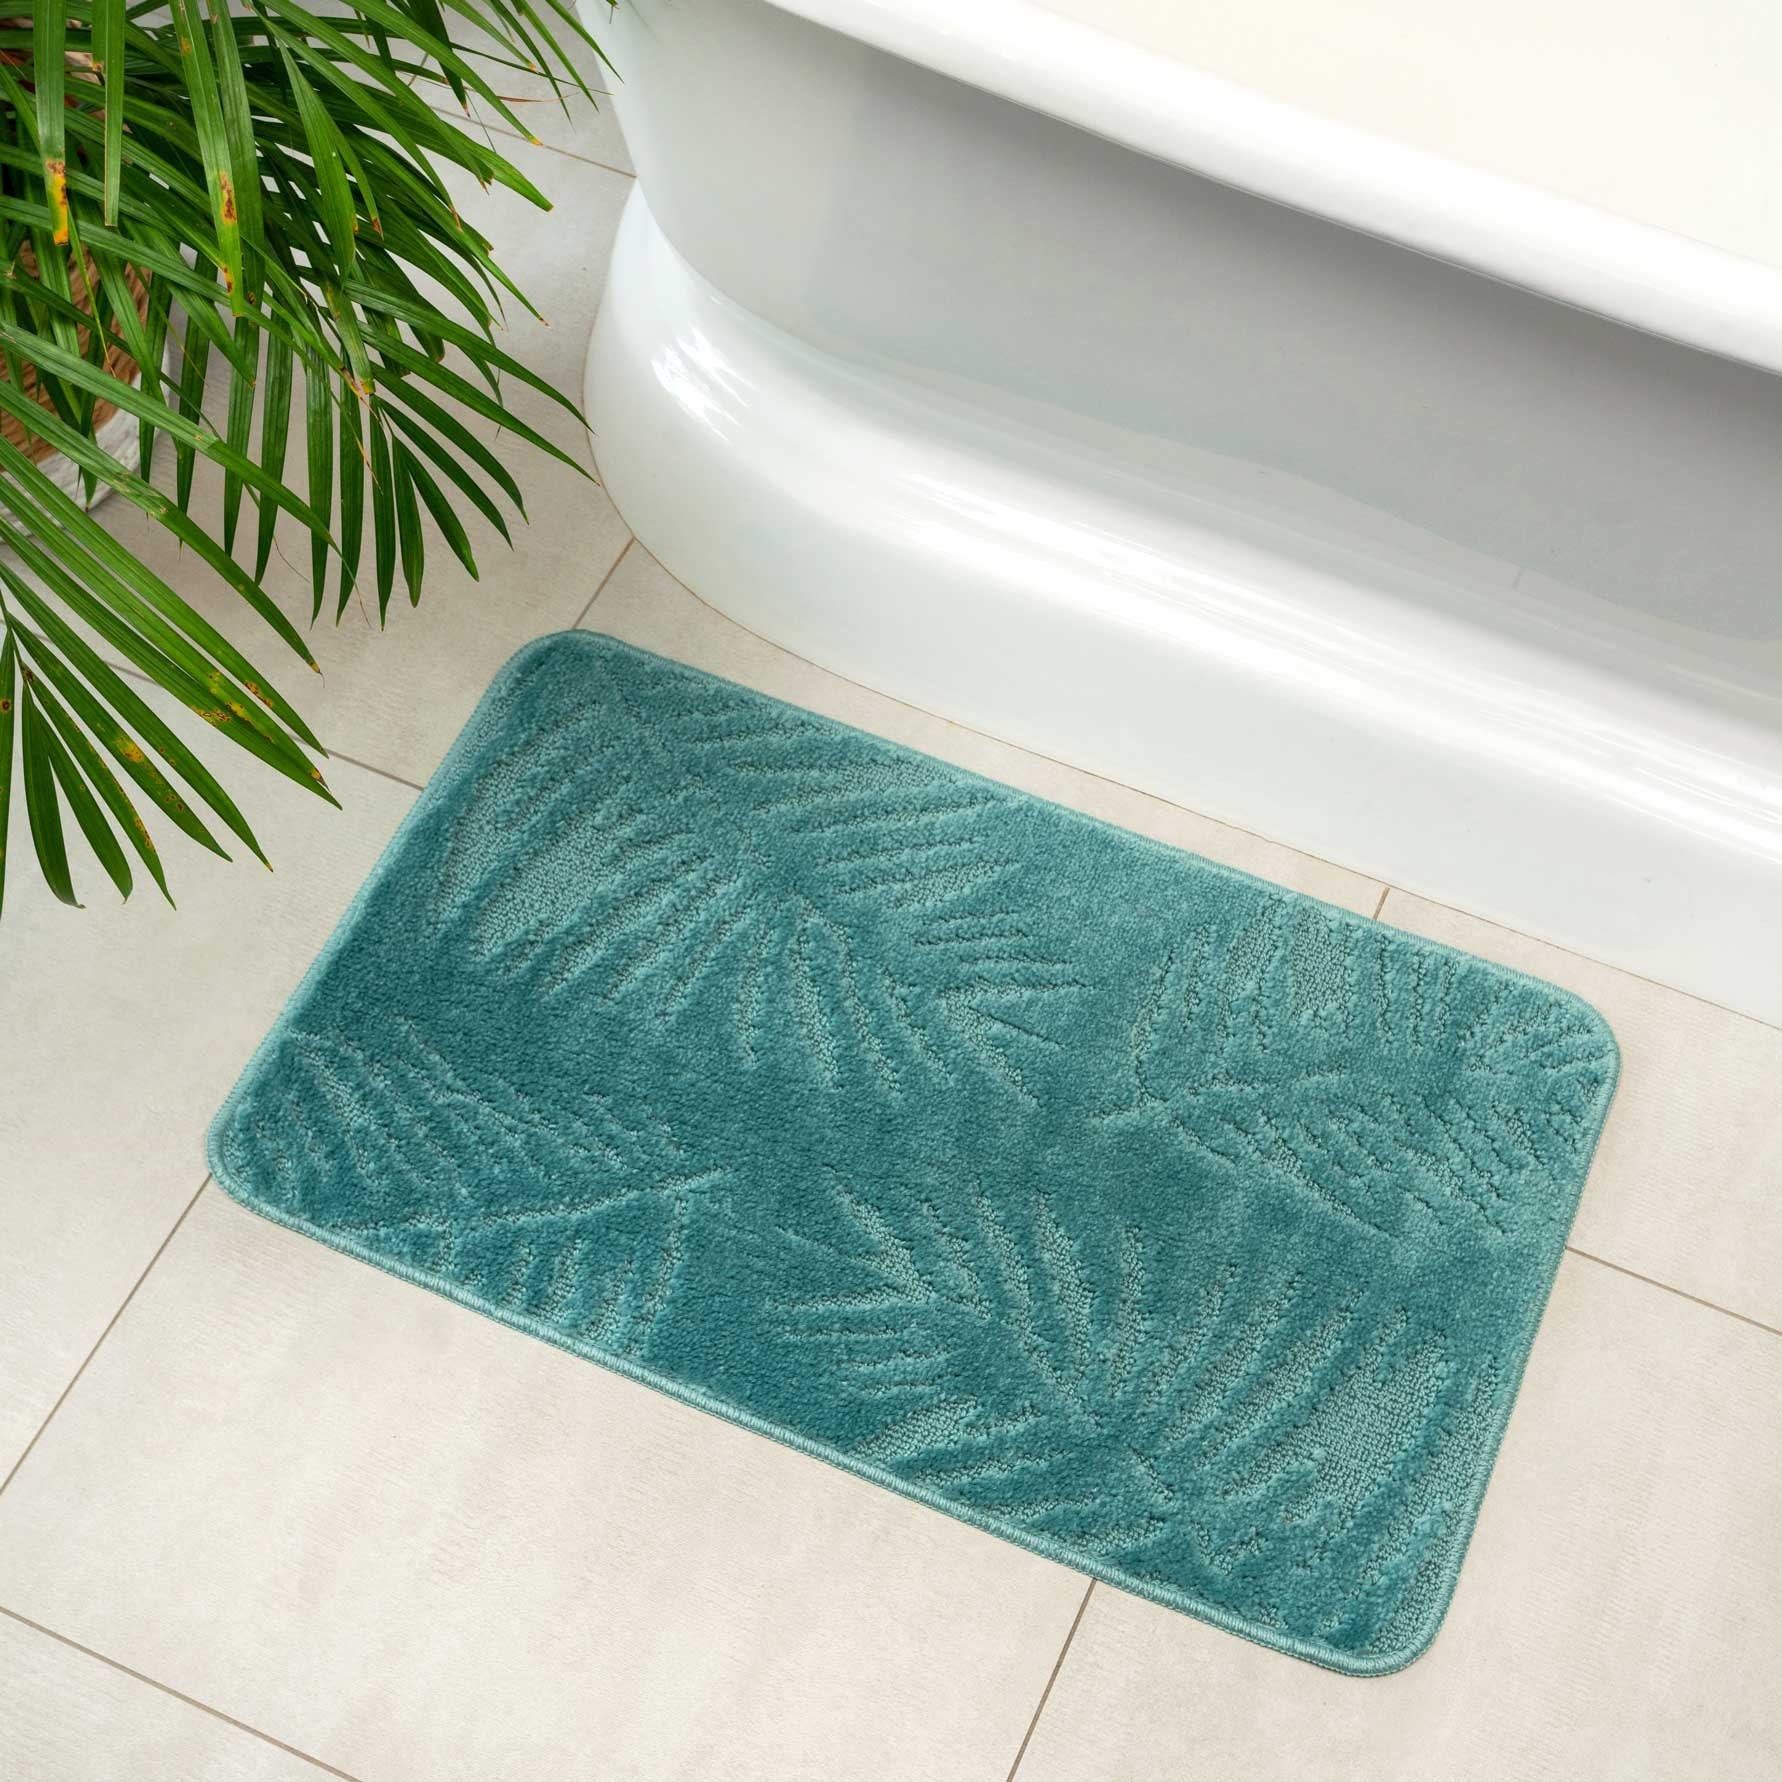 Kaufe Badezimmer saugfähige rutschfeste Matte Türmatte Toilette Boden  Dusche Zimmer Badewanne Teppich Küchenteppich